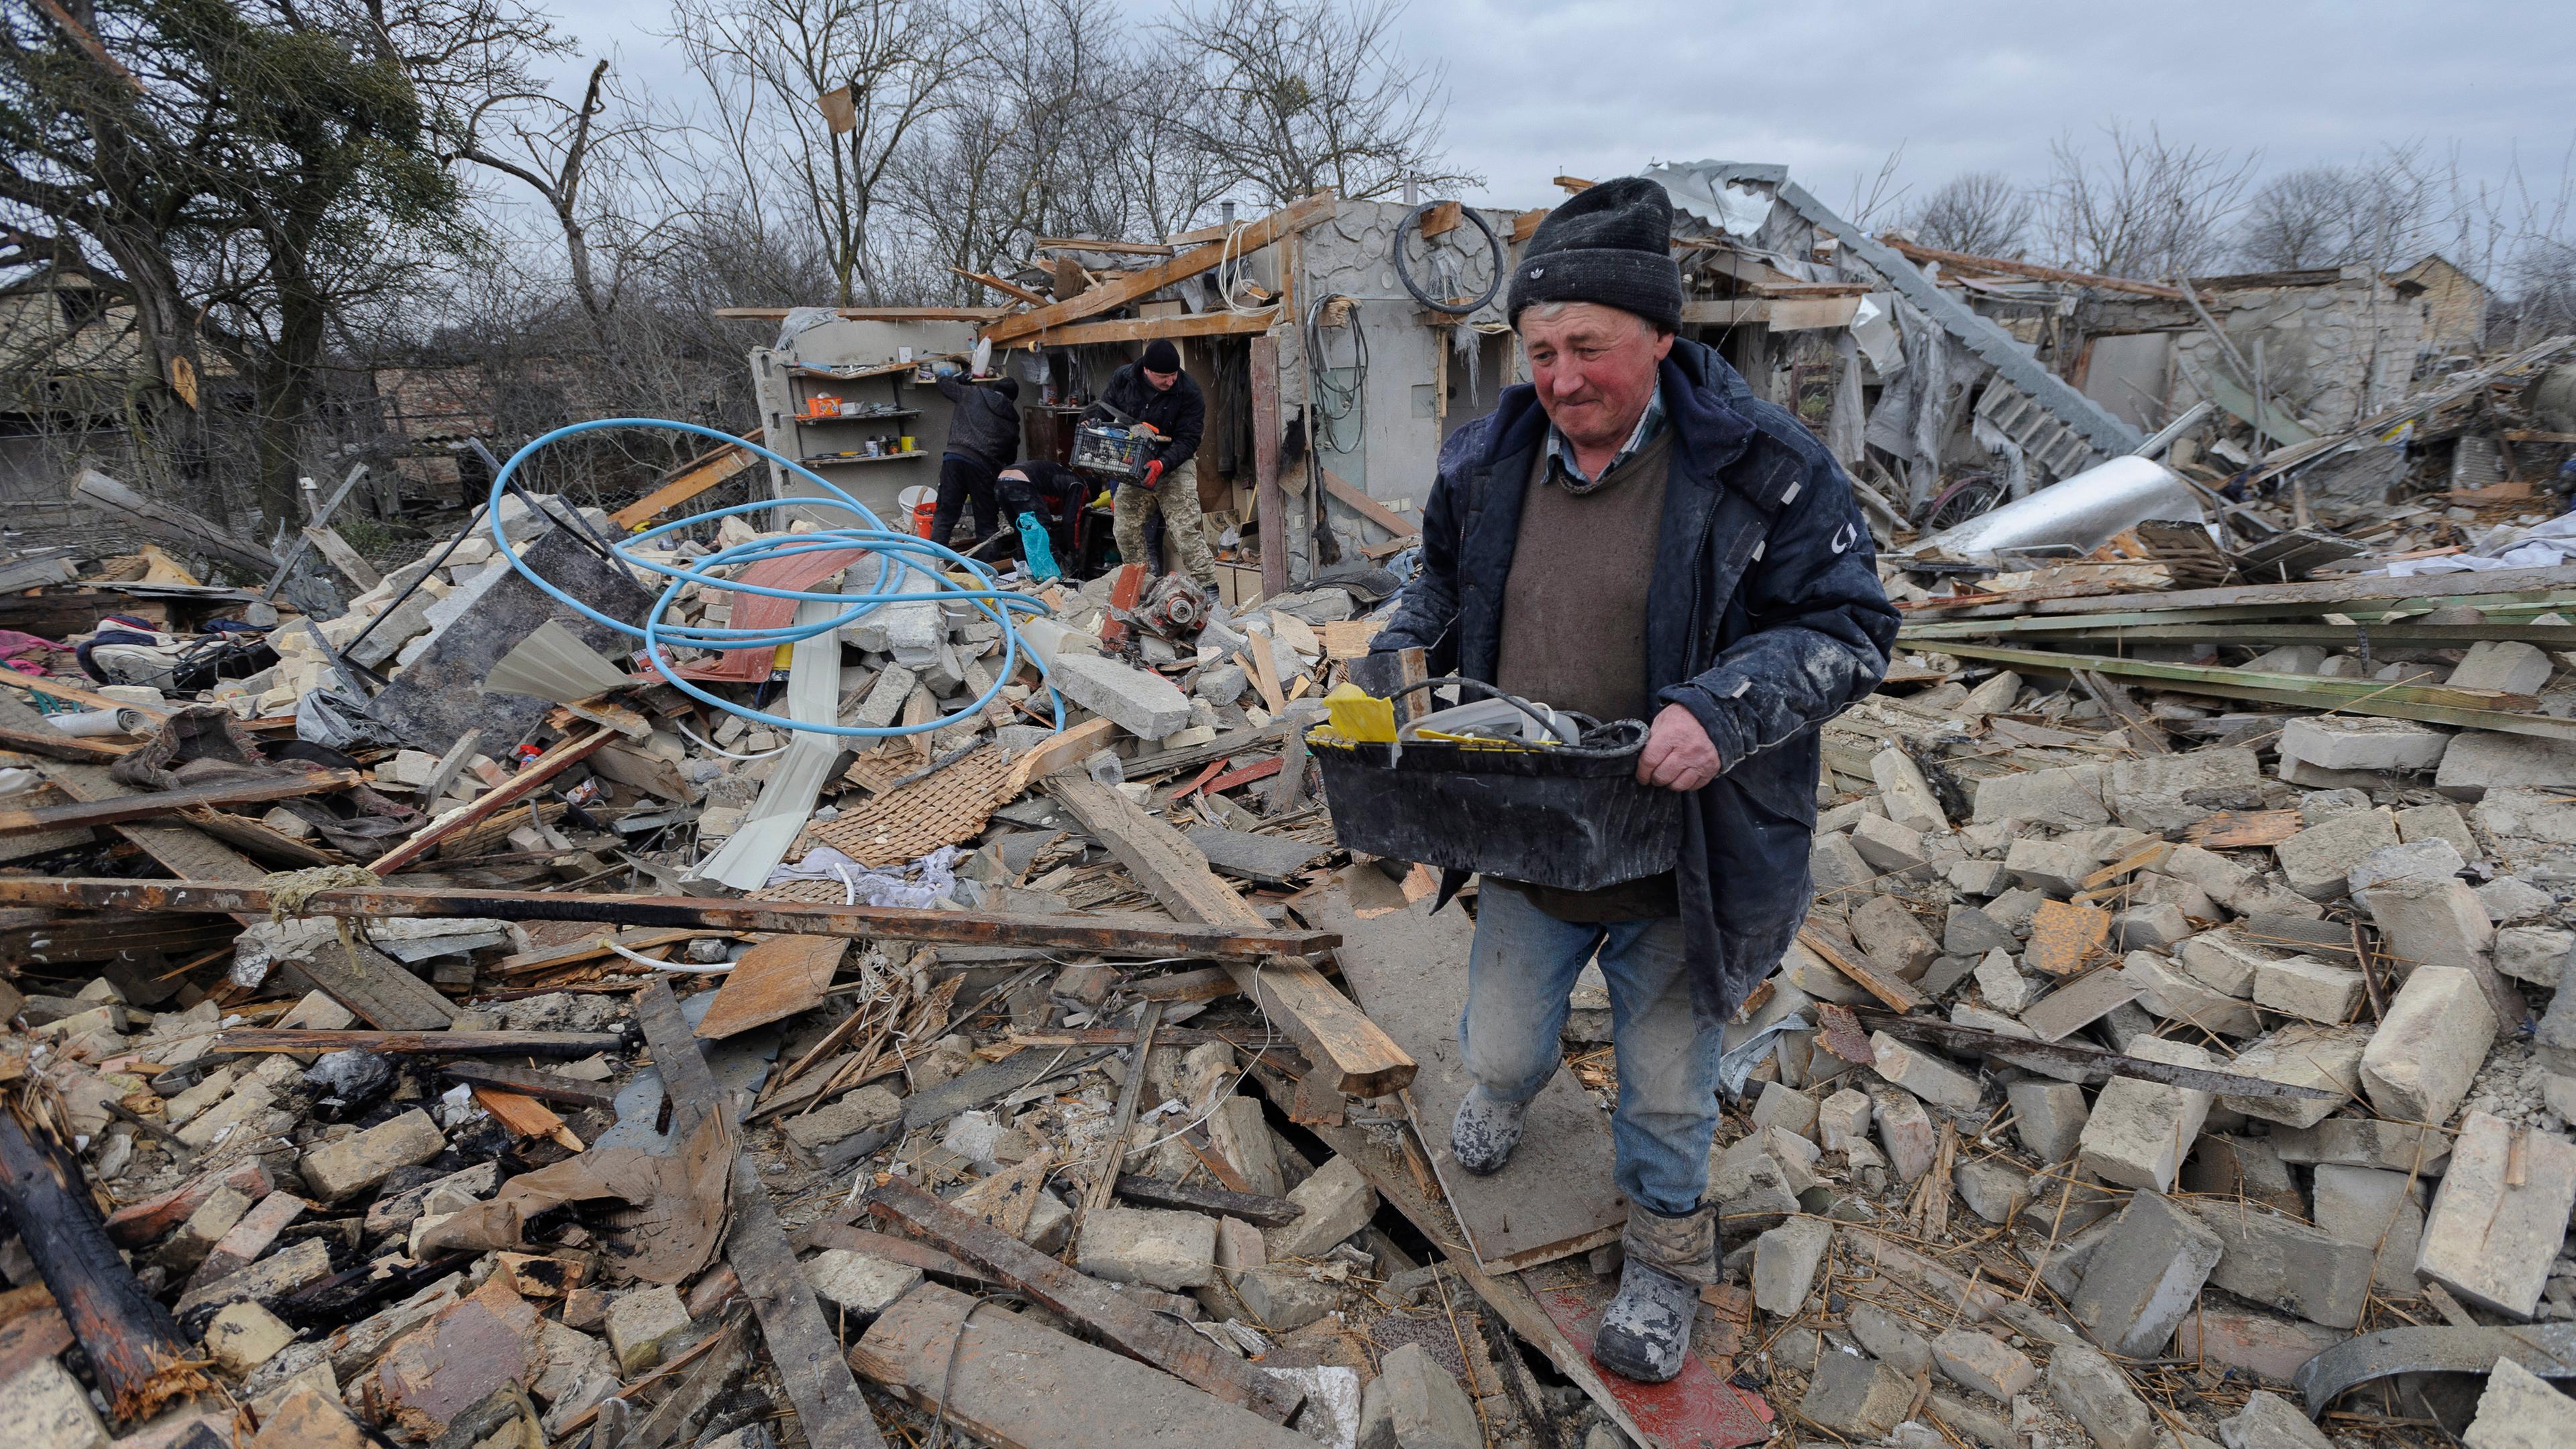 Dorfbewohner räumen die Trümmer nach einem nächtlichen Raketenangriff auf Privathäuser in Solotschiw in der Ukraine auf am 09.03.2023